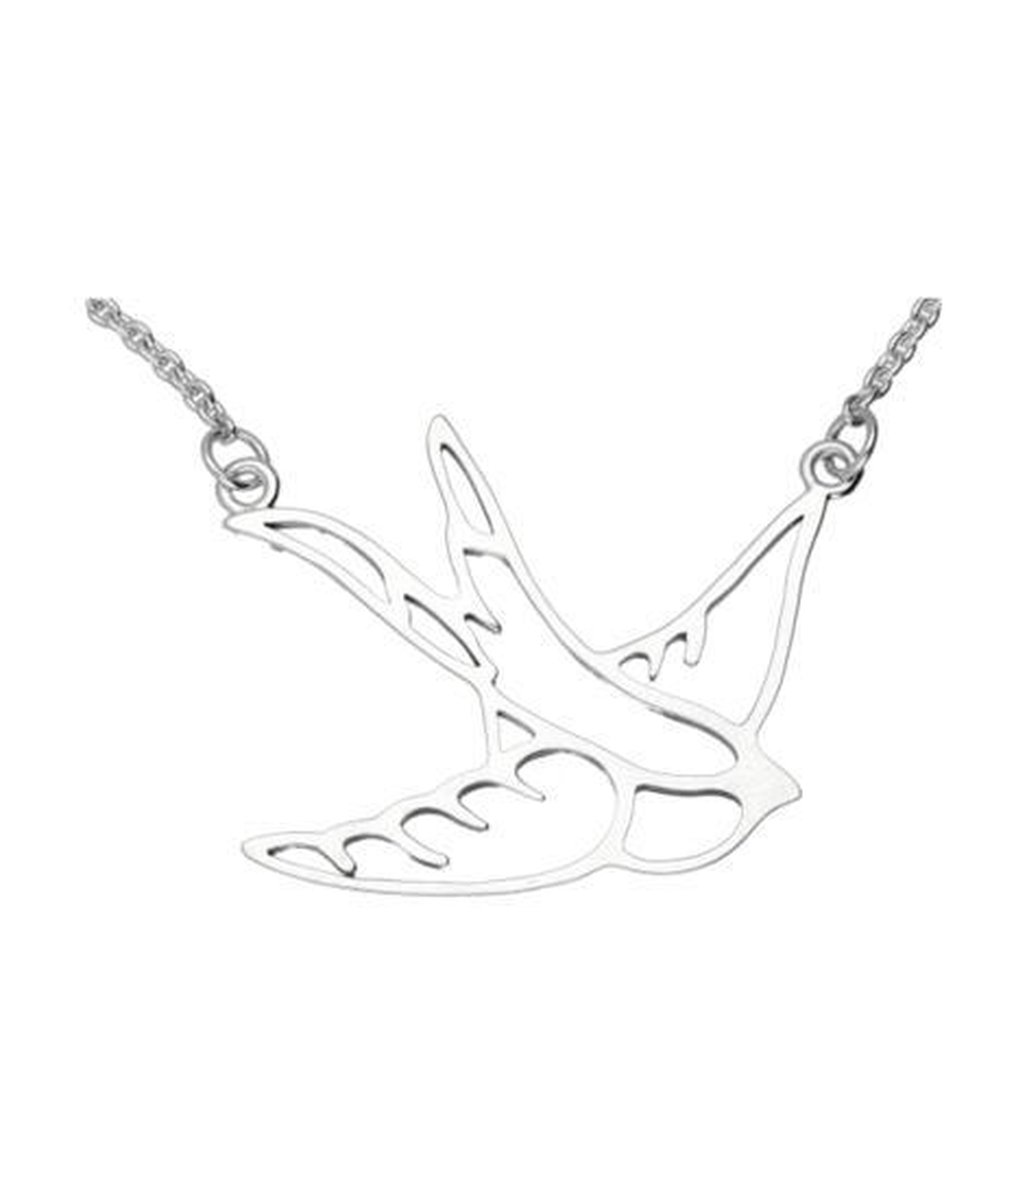 Zilveren Zwaluw met ketting 45cm kettinghanger